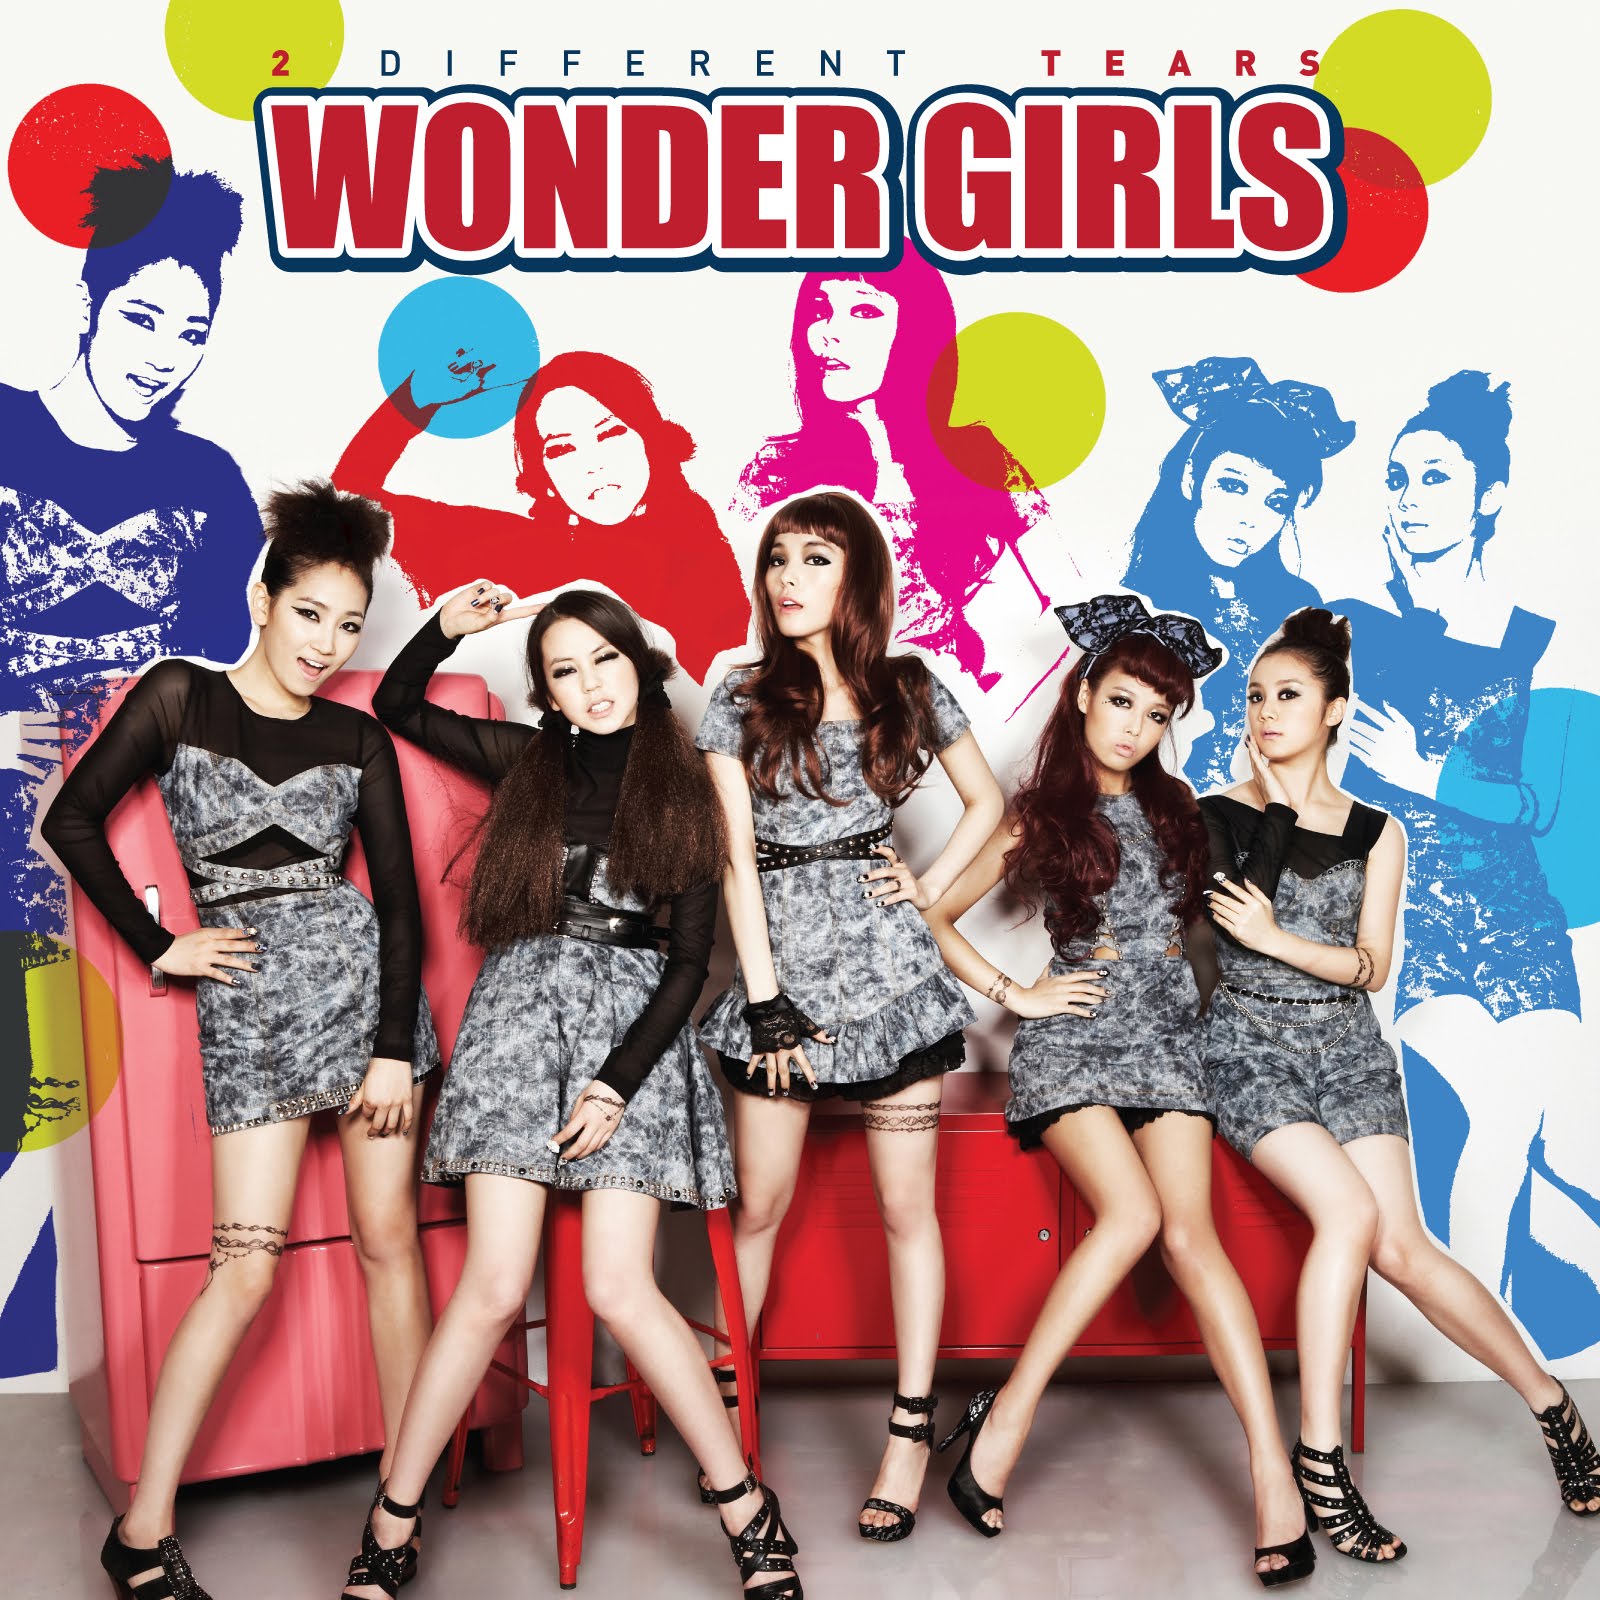 http://3.bp.blogspot.com/_y0LlMBLNZzQ/TBhr6aTrj3I/AAAAAAAAA7c/gJm1IVVXmno/s1600/Wonder+Girls+2+Different+Tears+Album.jpg